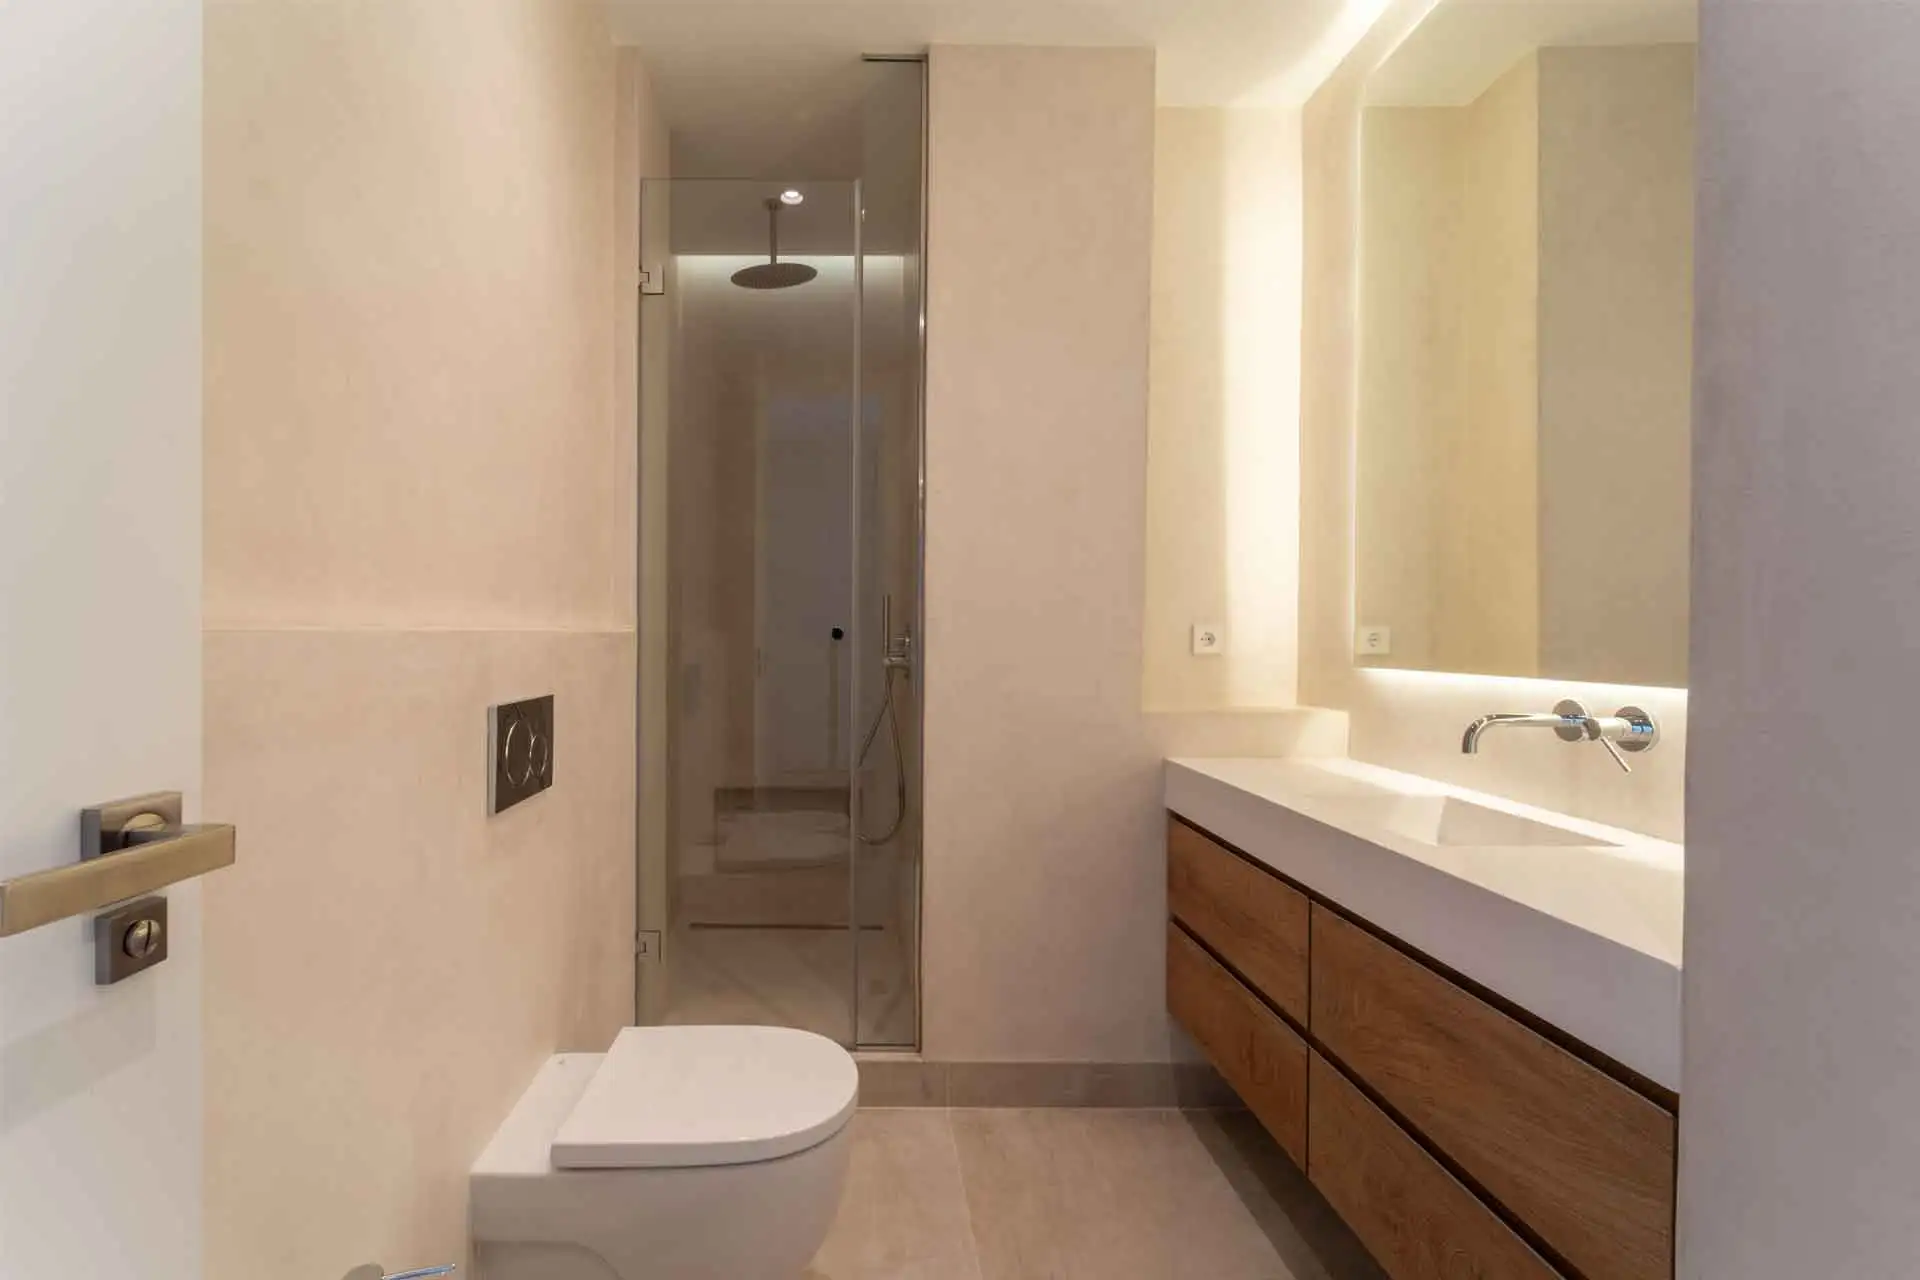 Cuarto de baño con lavabo de un seno, inodoro suspendido ducha vertical cerrada con puerta de cristal cerrada